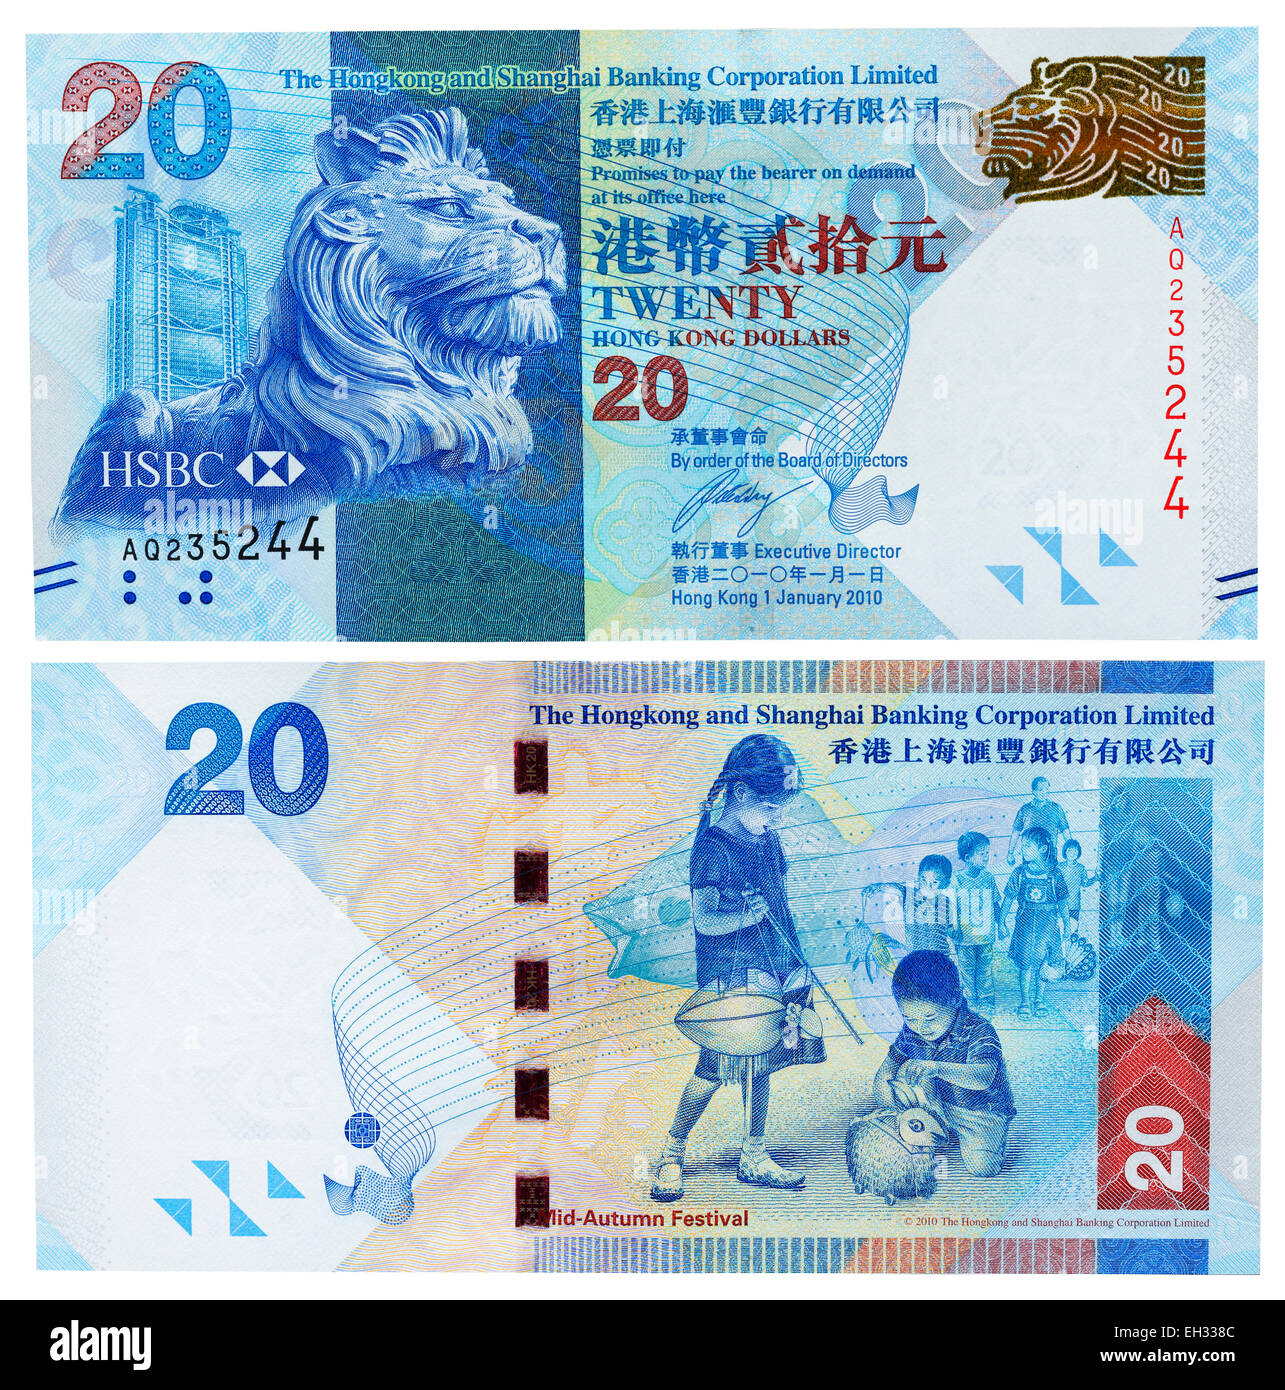 Billetes de coleccion, El billete de 20 dólares que vale más de 270.000  dólares: ¿tienes uno?, Estados Unidos, venezuela, Mundo